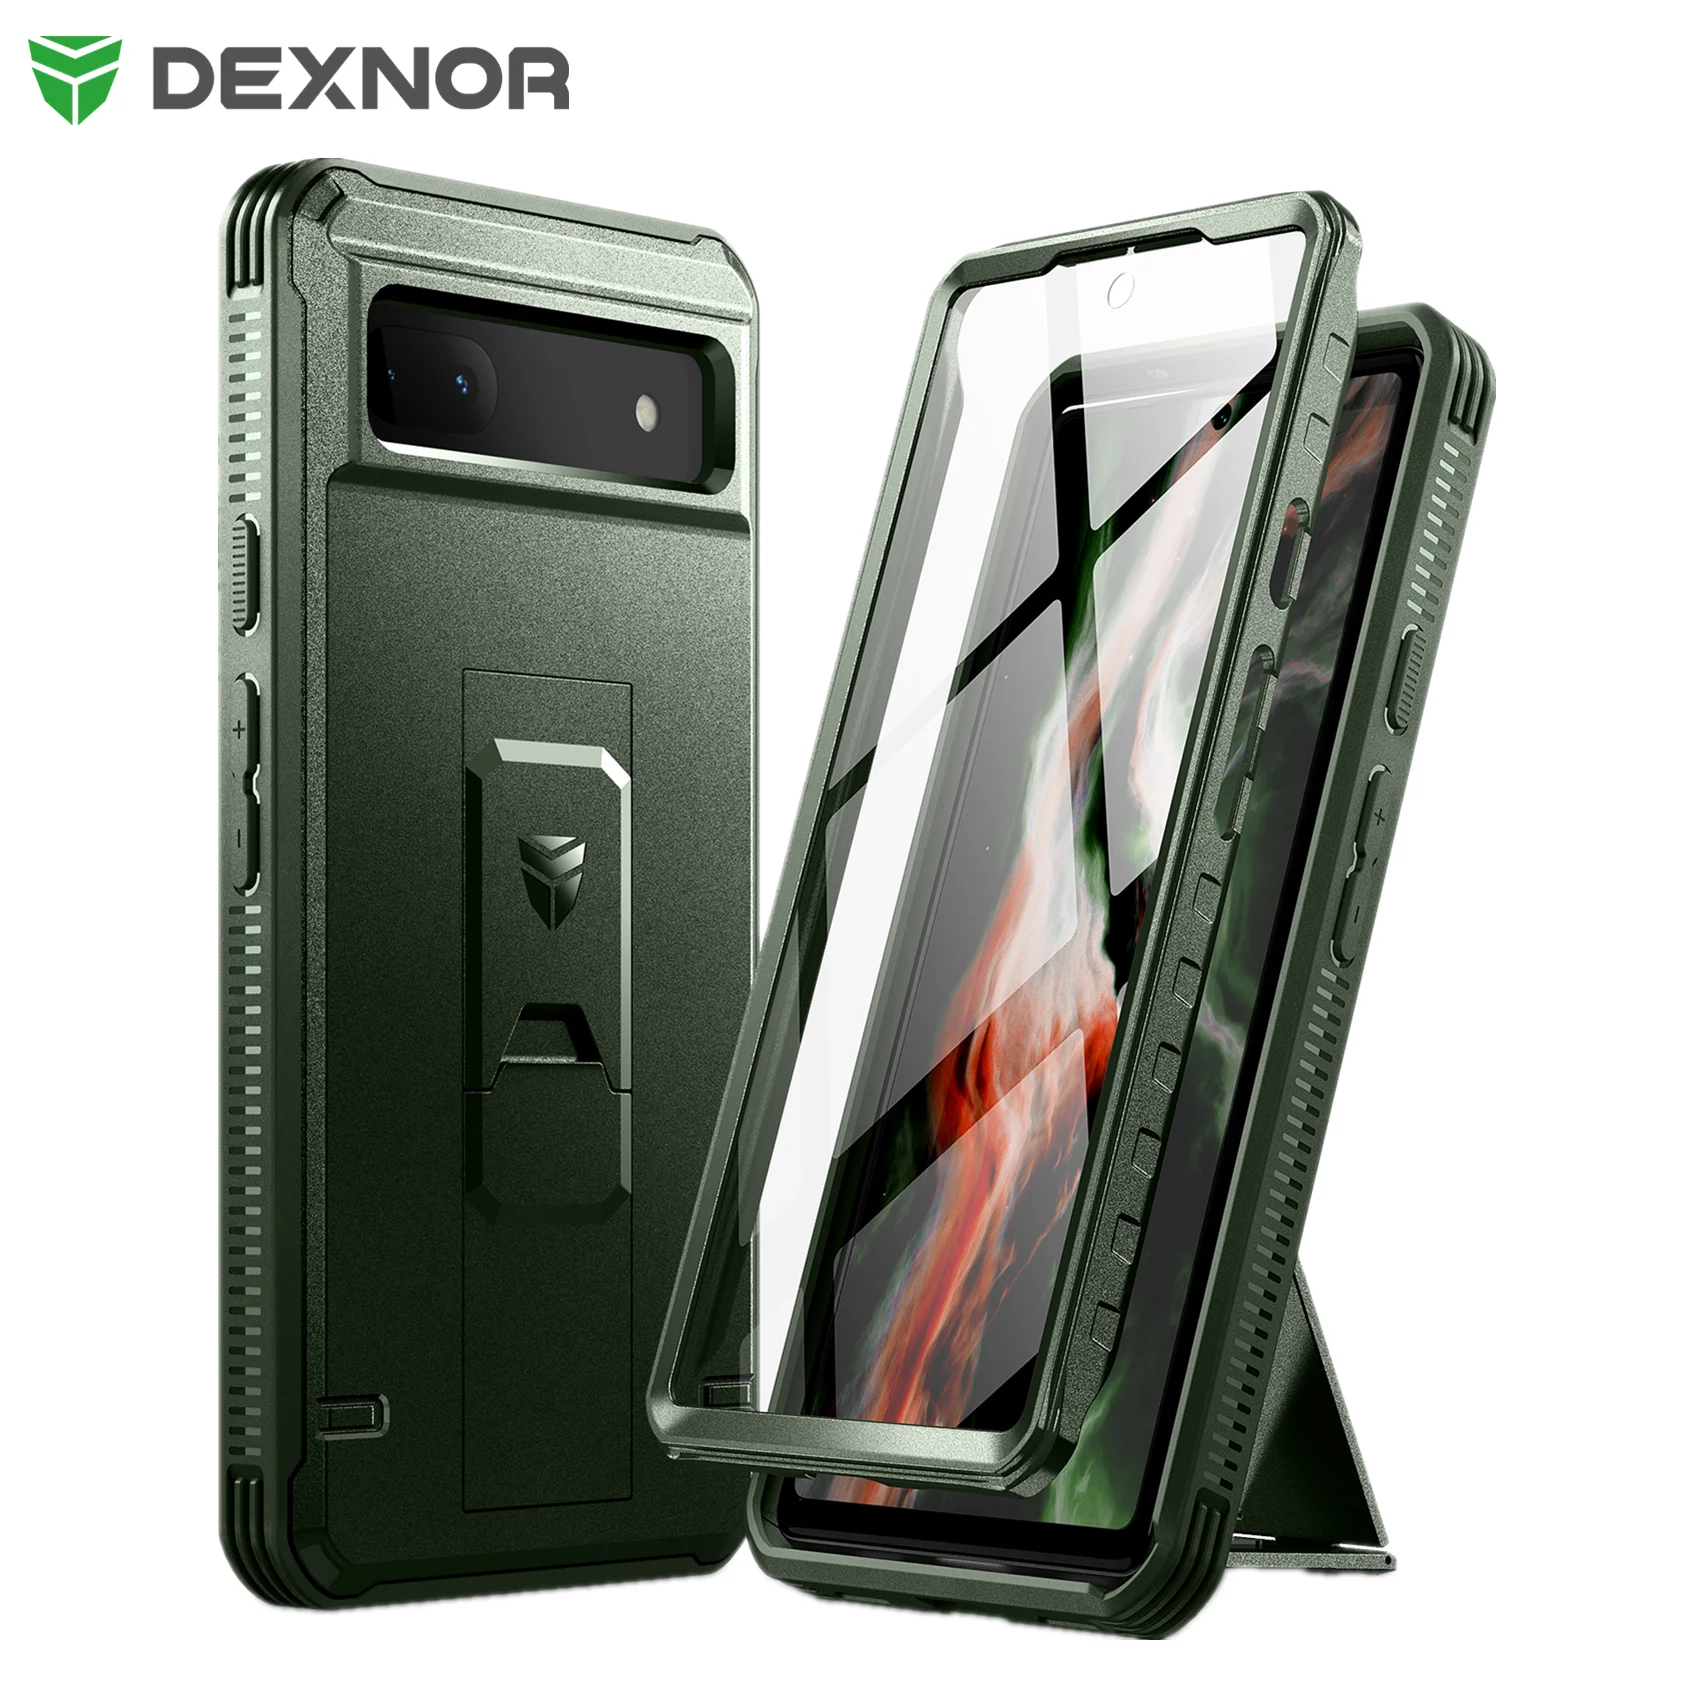 Dexnor Funda para Galaxy S20+ Plus con protector de pantalla, cuerpo  completo transparente, resistente, a prueba de golpes, carcasa trasera dura